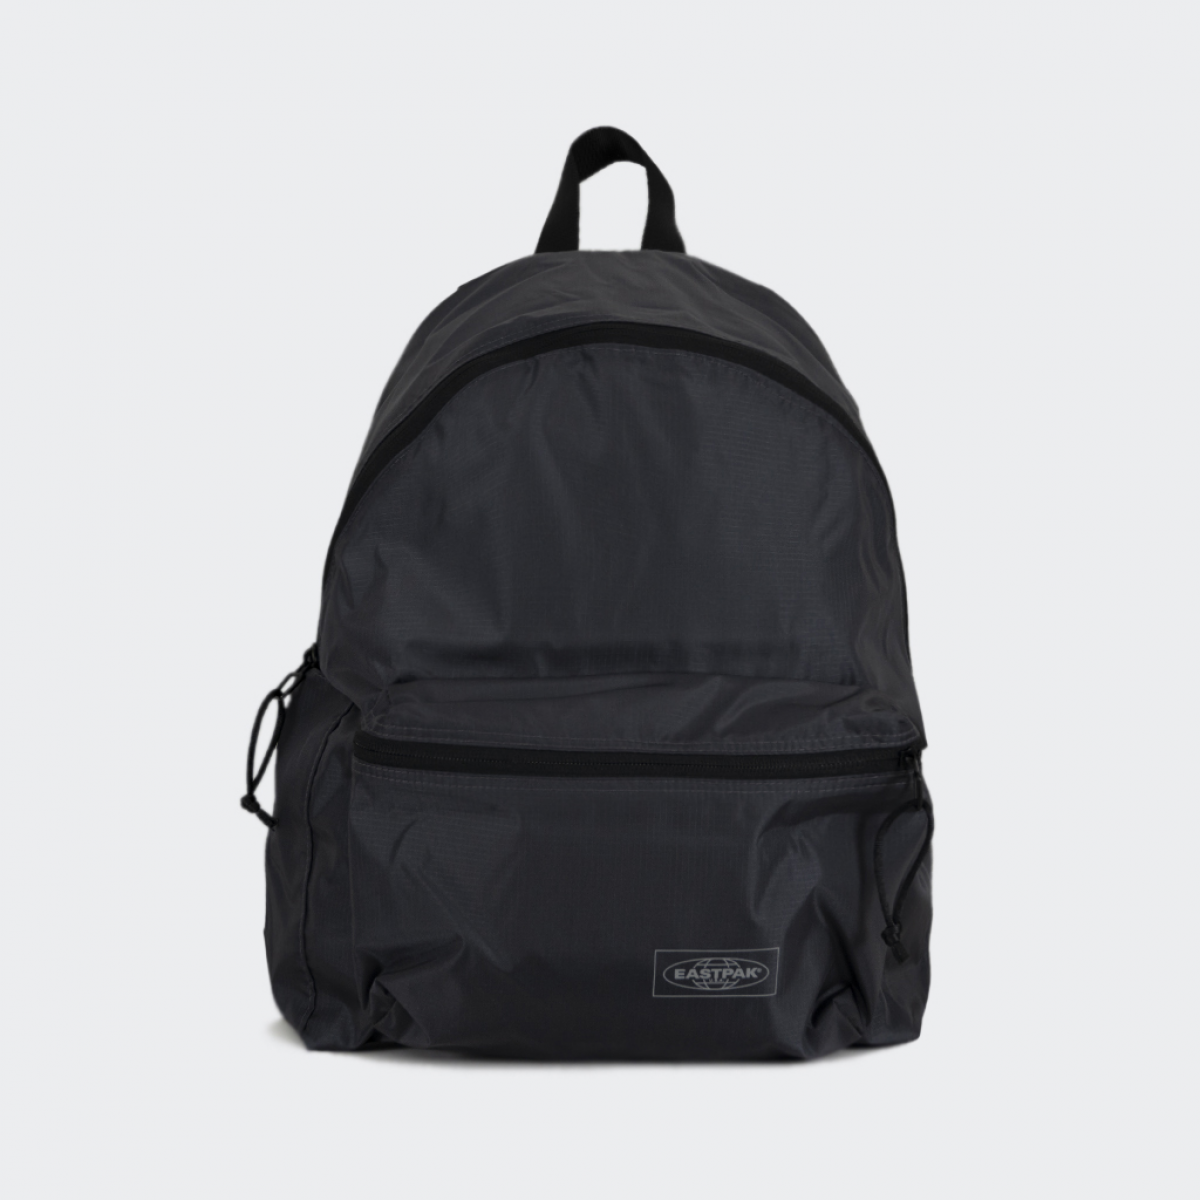 Eastpak Padded Double Backpack - Black